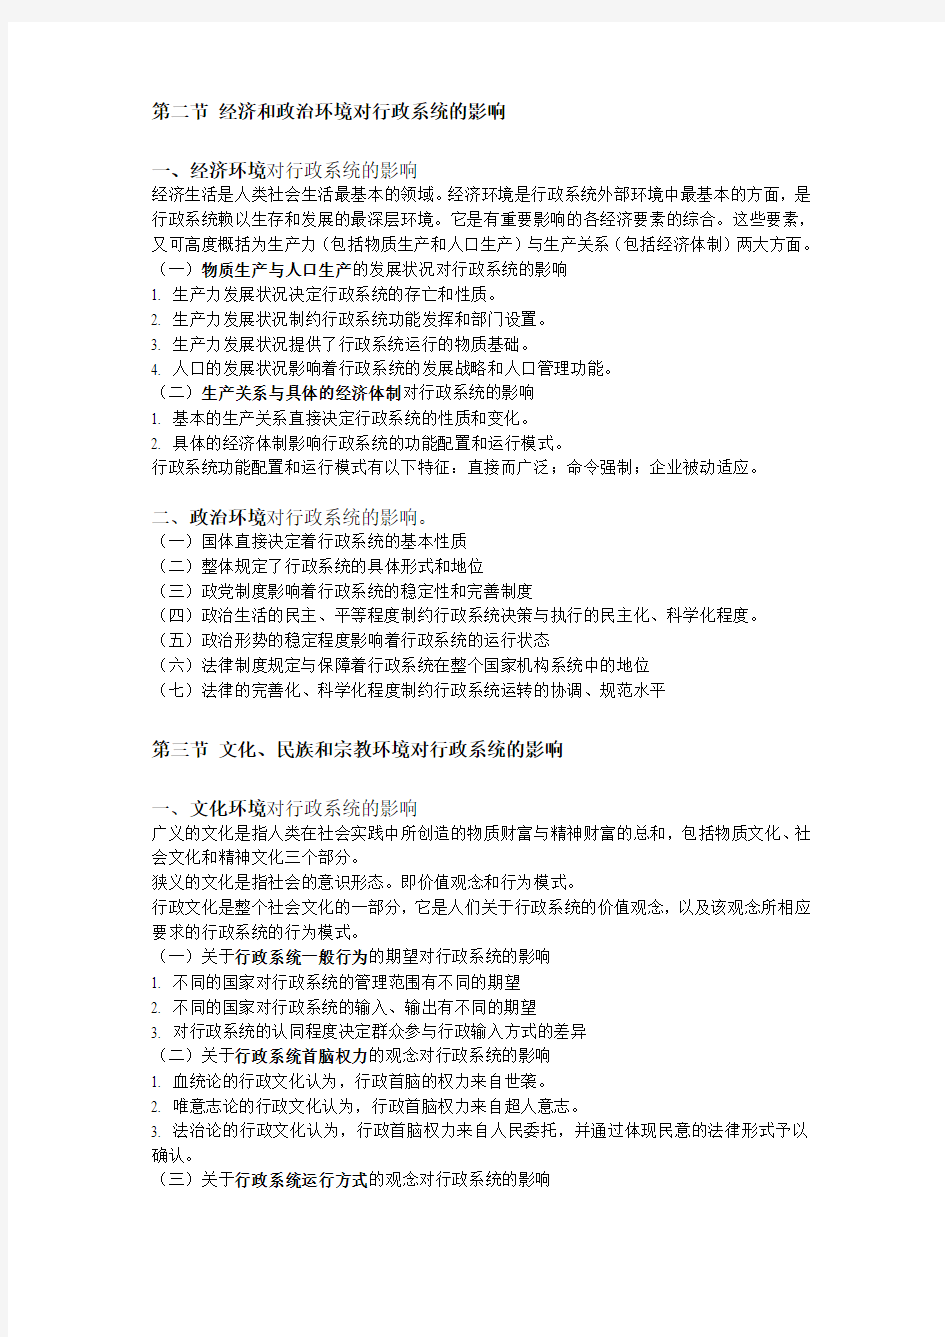 湘潭大学行政管理专业考研书目《行政管理学》笔记